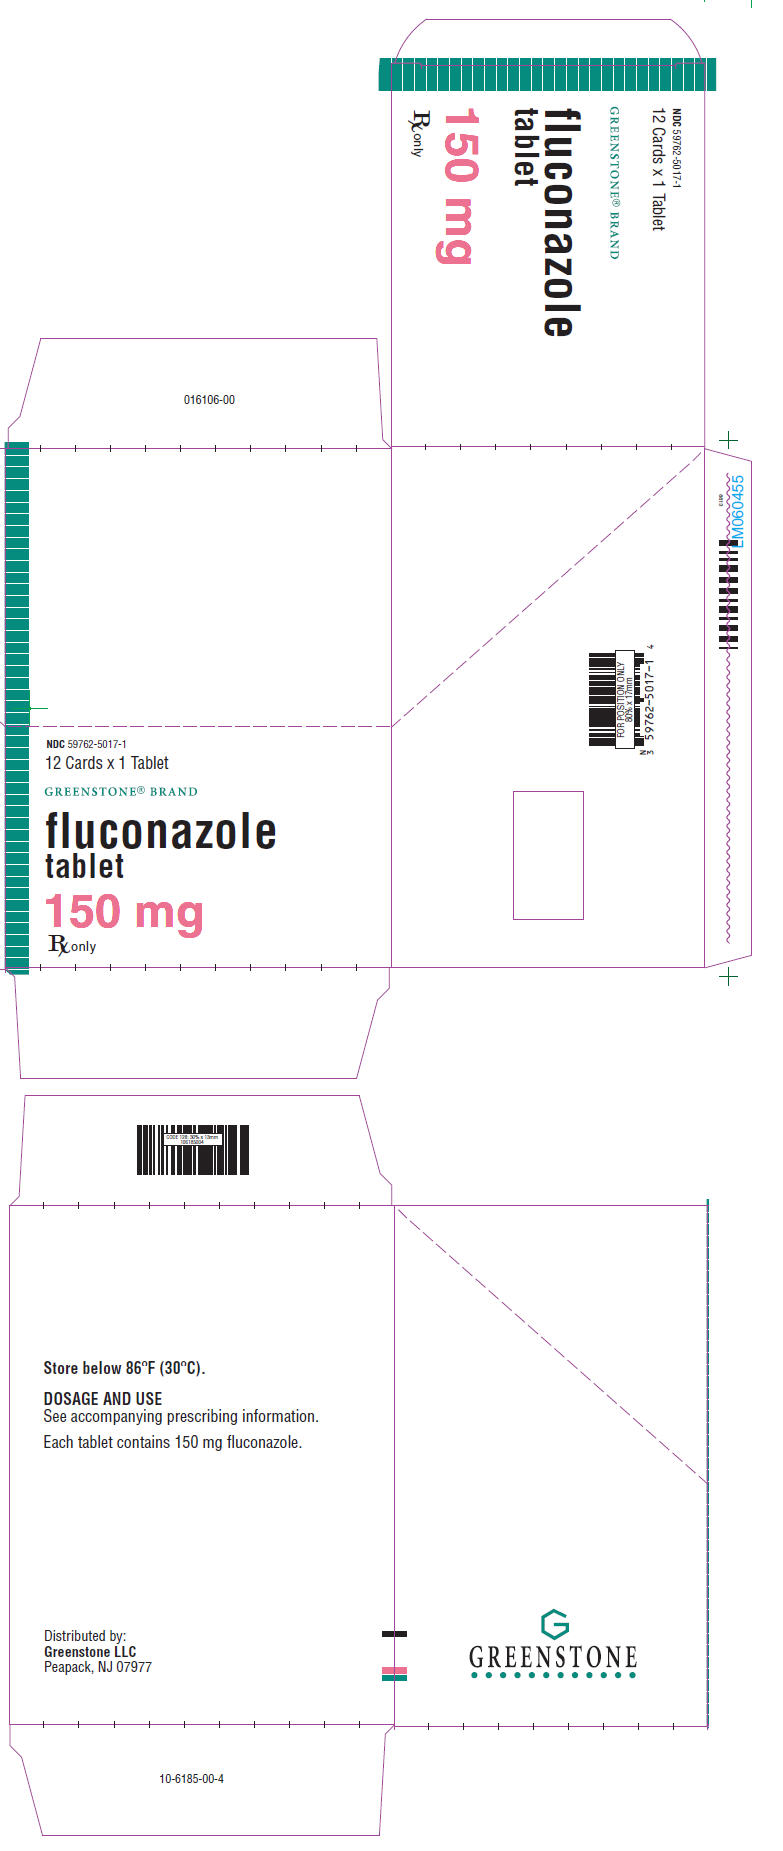 Principal Display Panel - 150 mg Tablet Blister Pack